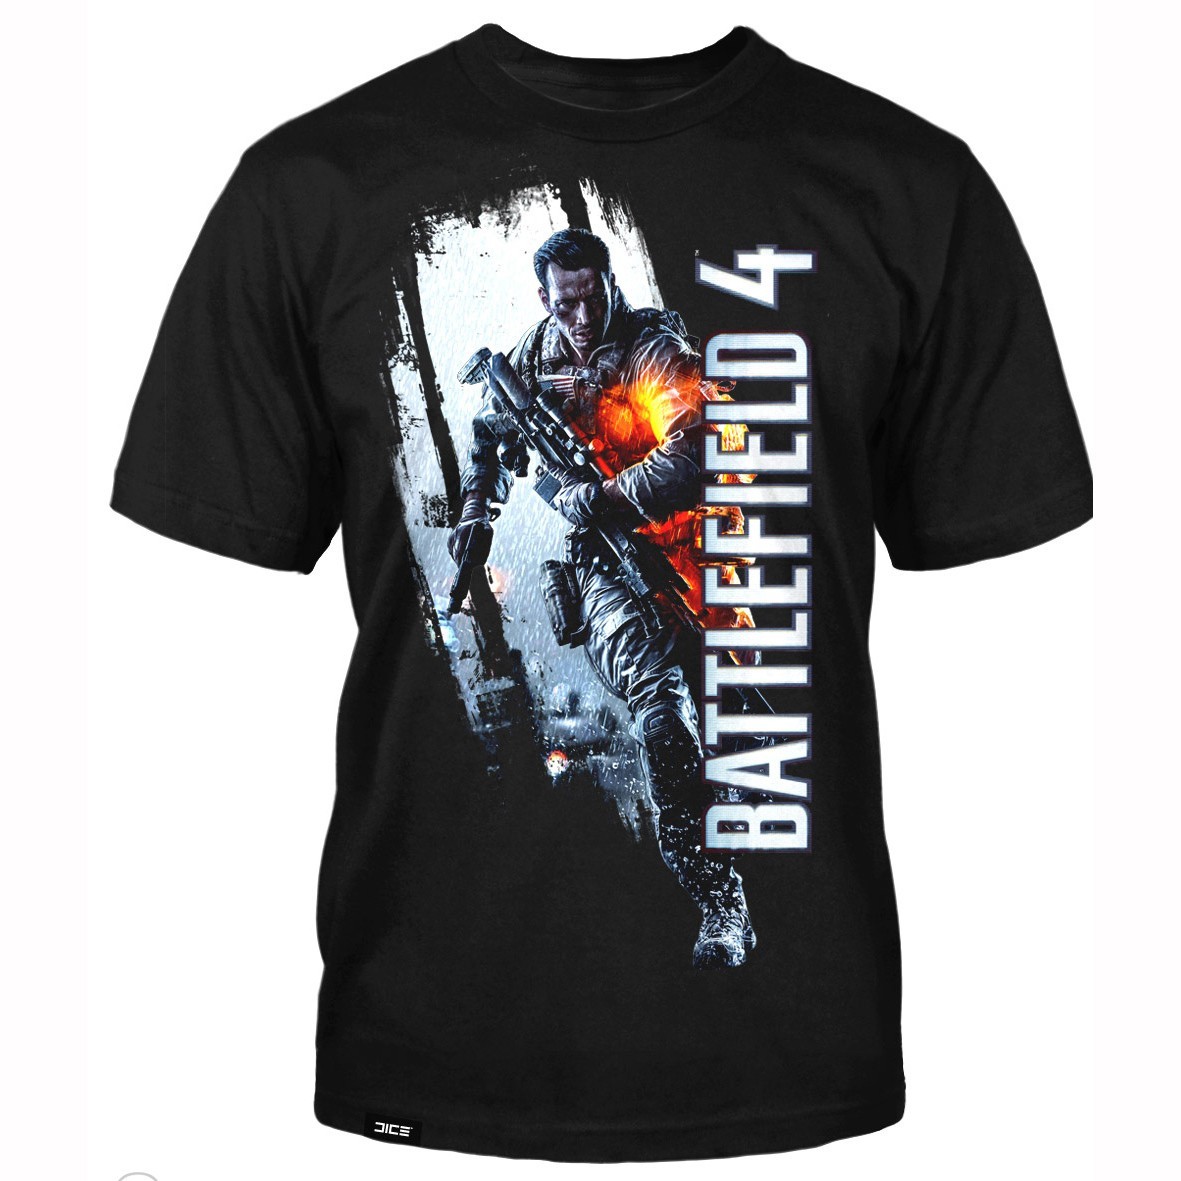 Battlefield 4 T-shirt